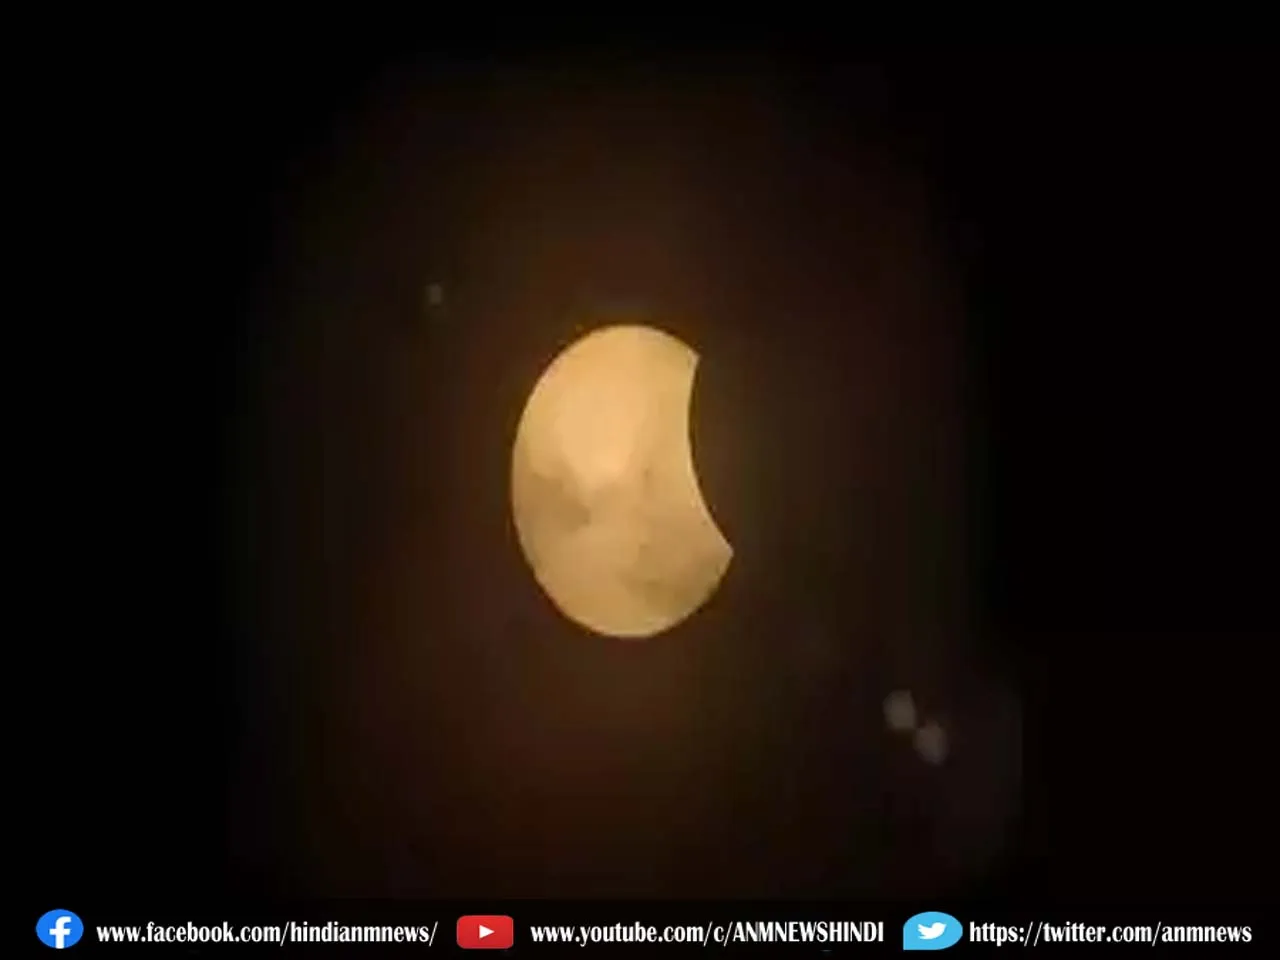 lunar eclipse saw